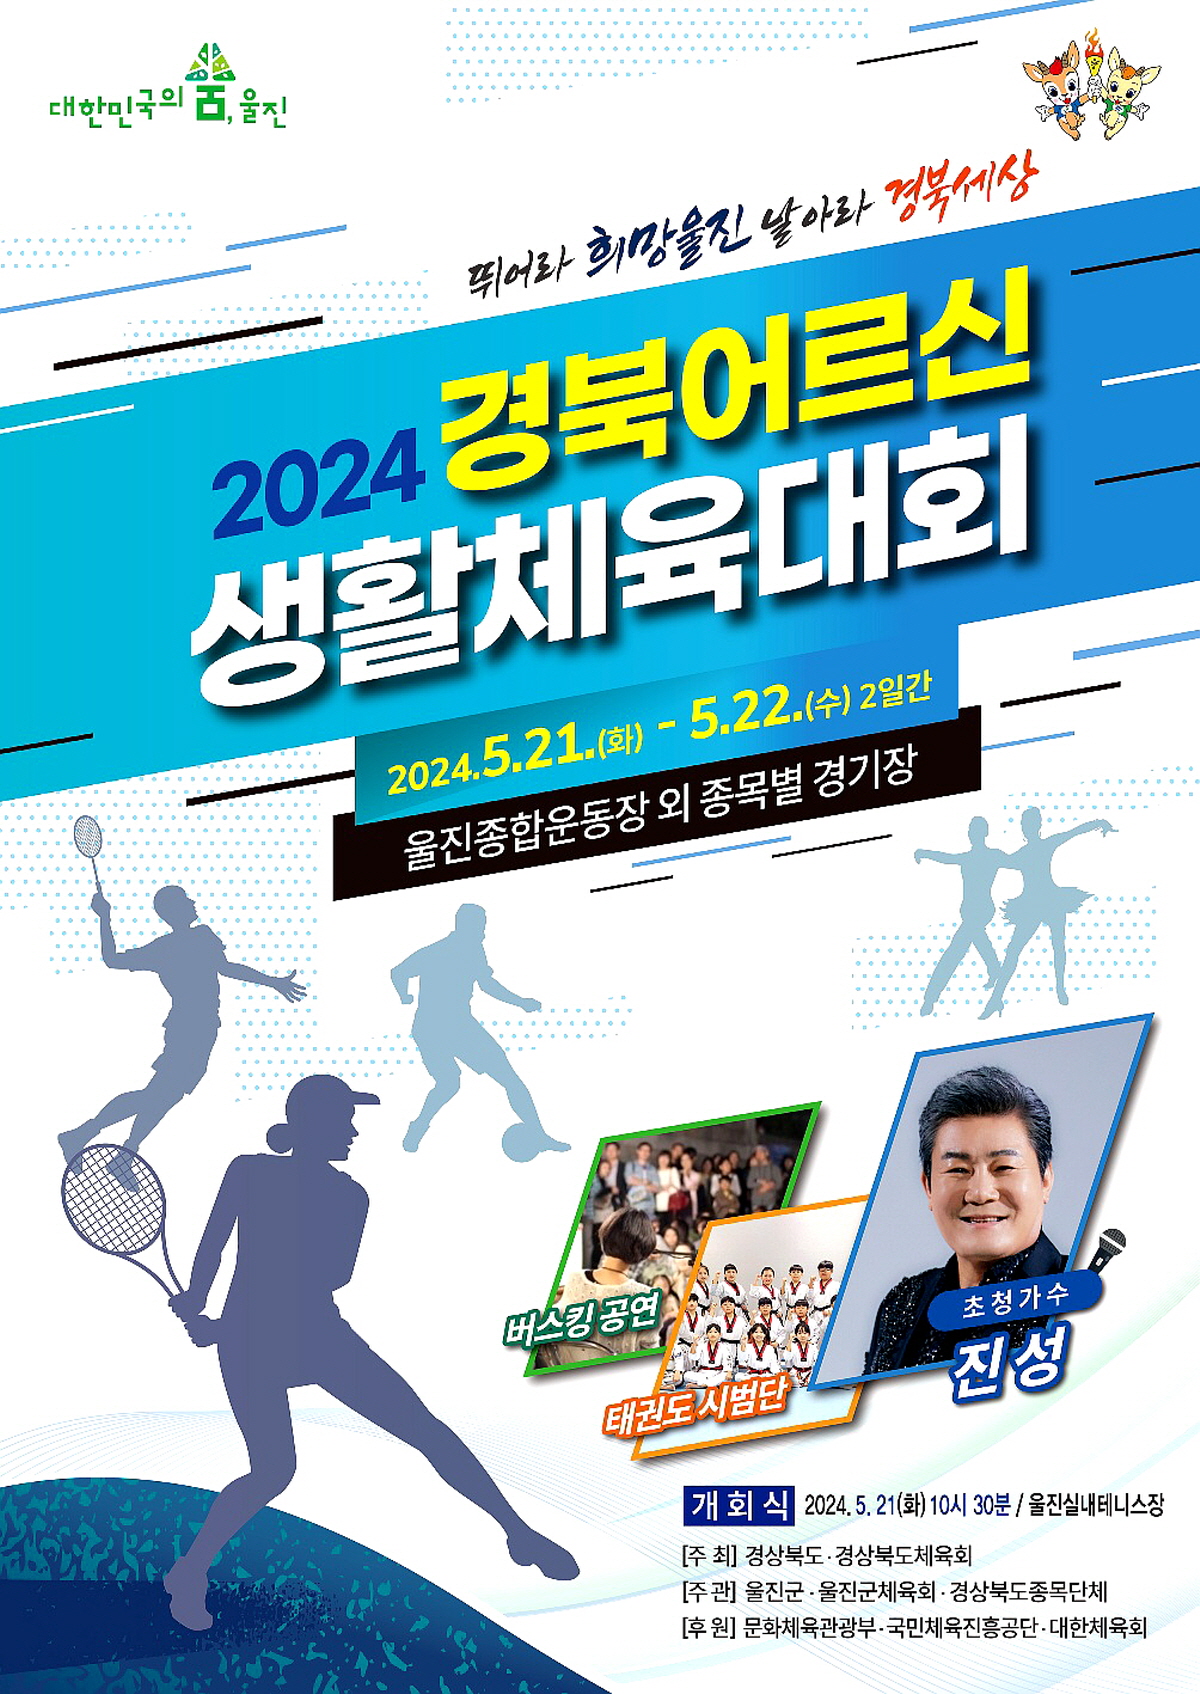 화합과 축제의 장, ‘2024 경북 어르신 생활체육 대회’개최